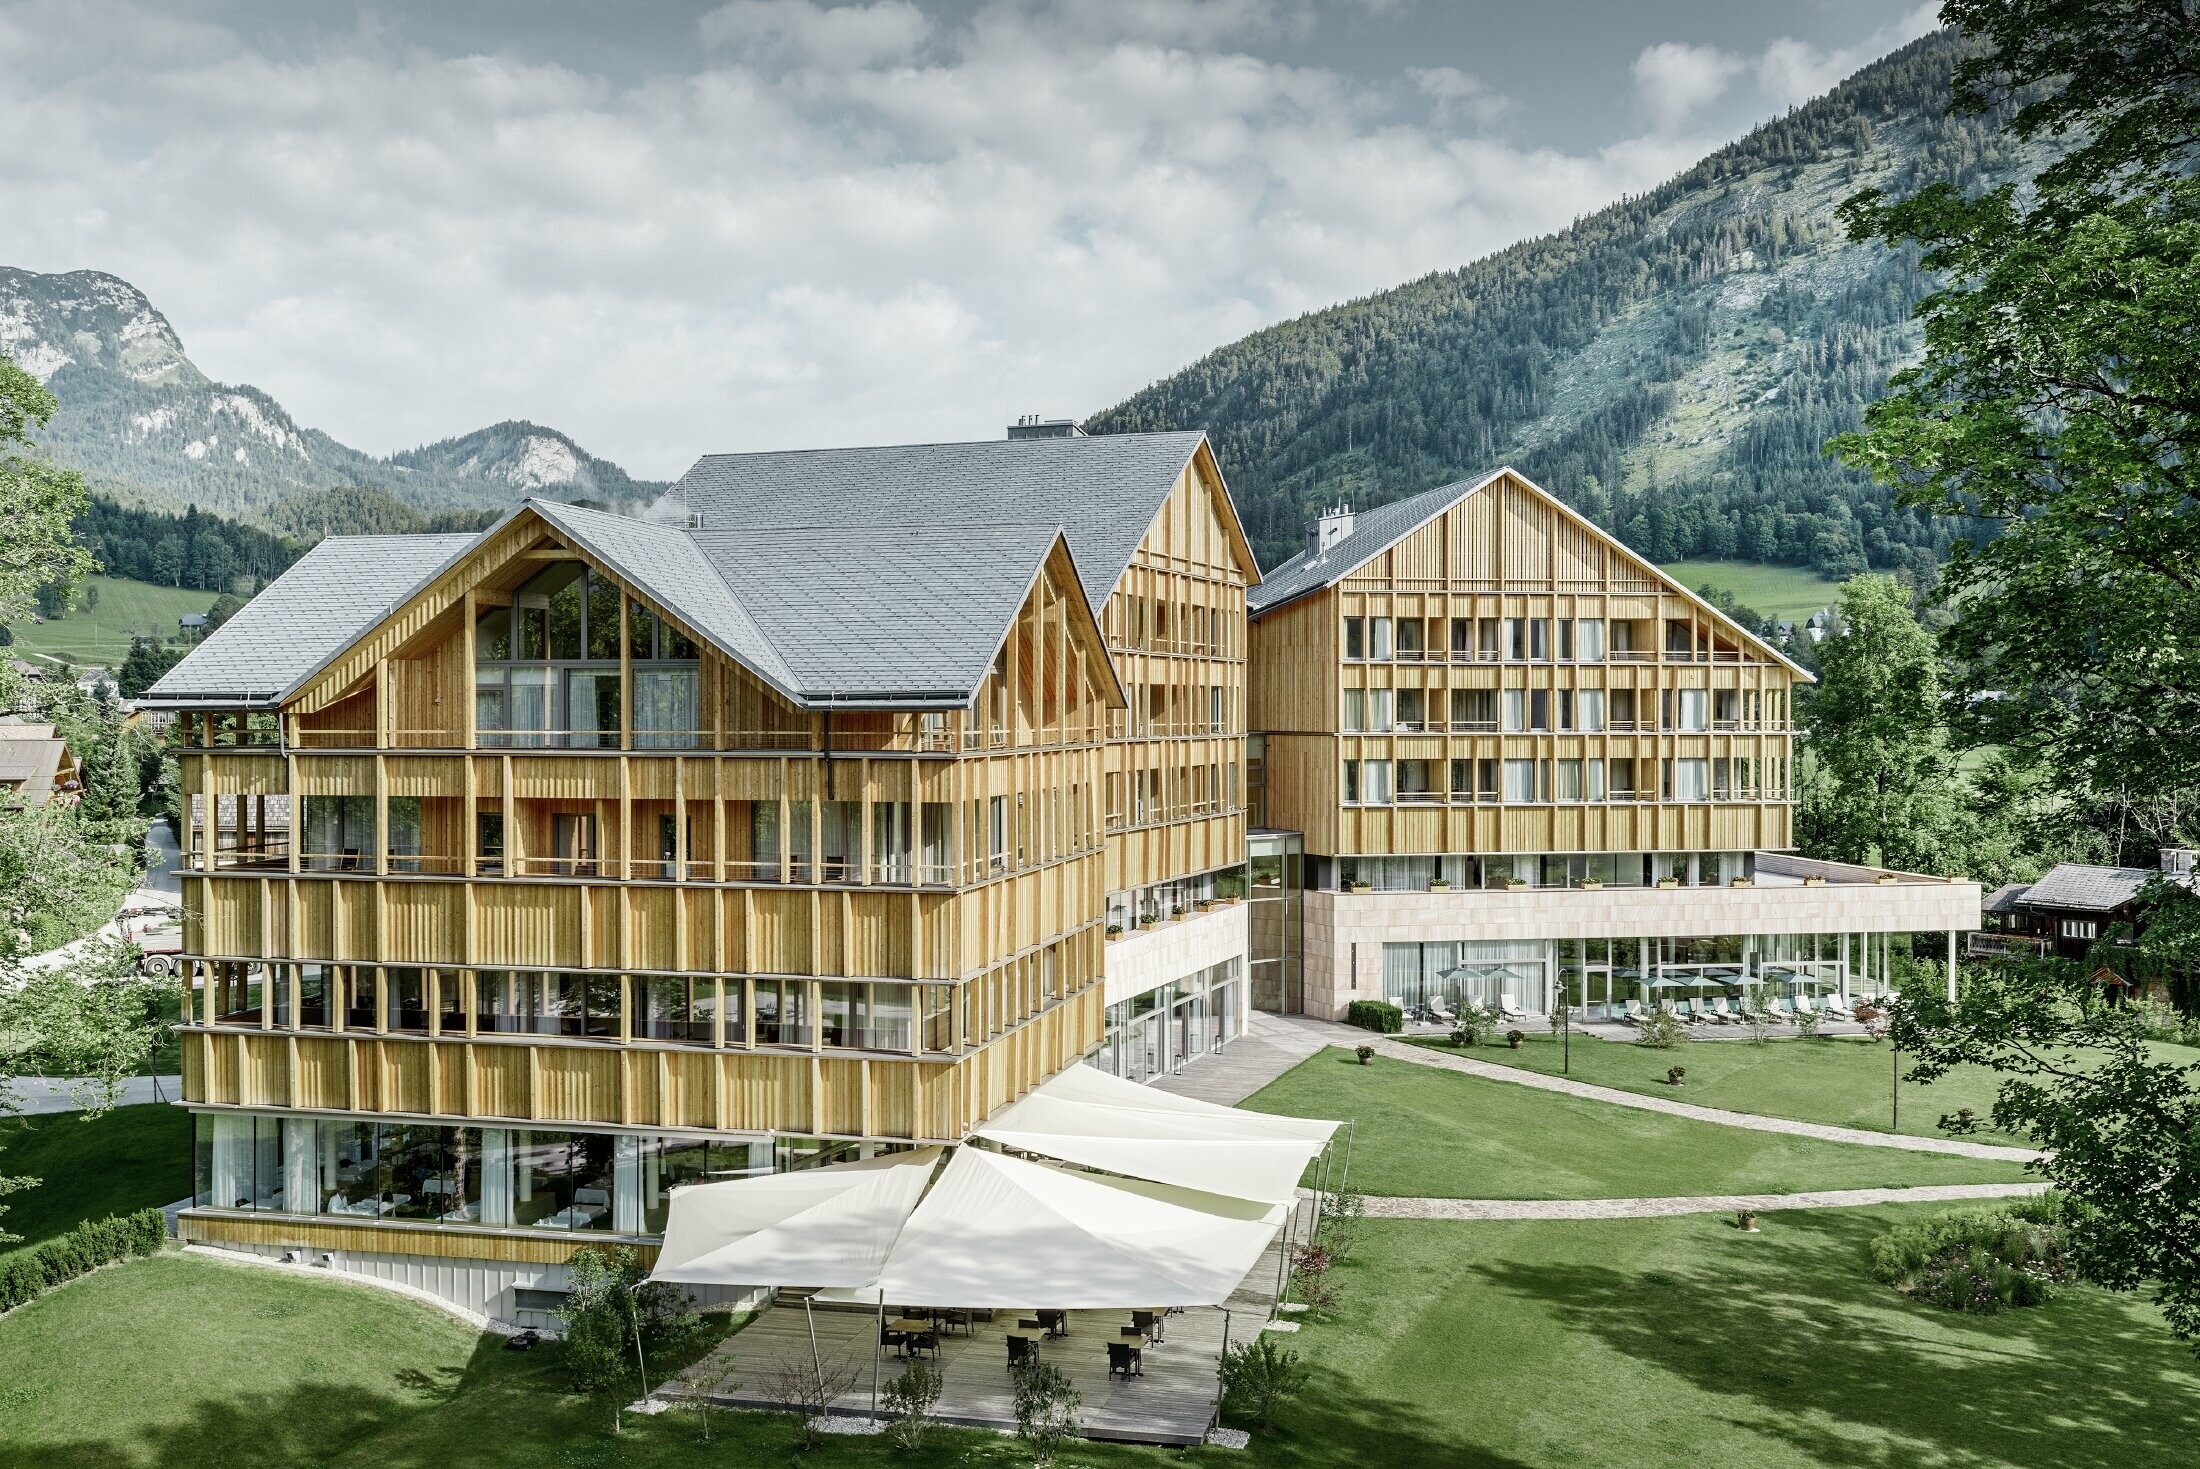 Hôtel Vivamayr à Altaussee (Autriche) — Façade en bois et bardeaux PREFA